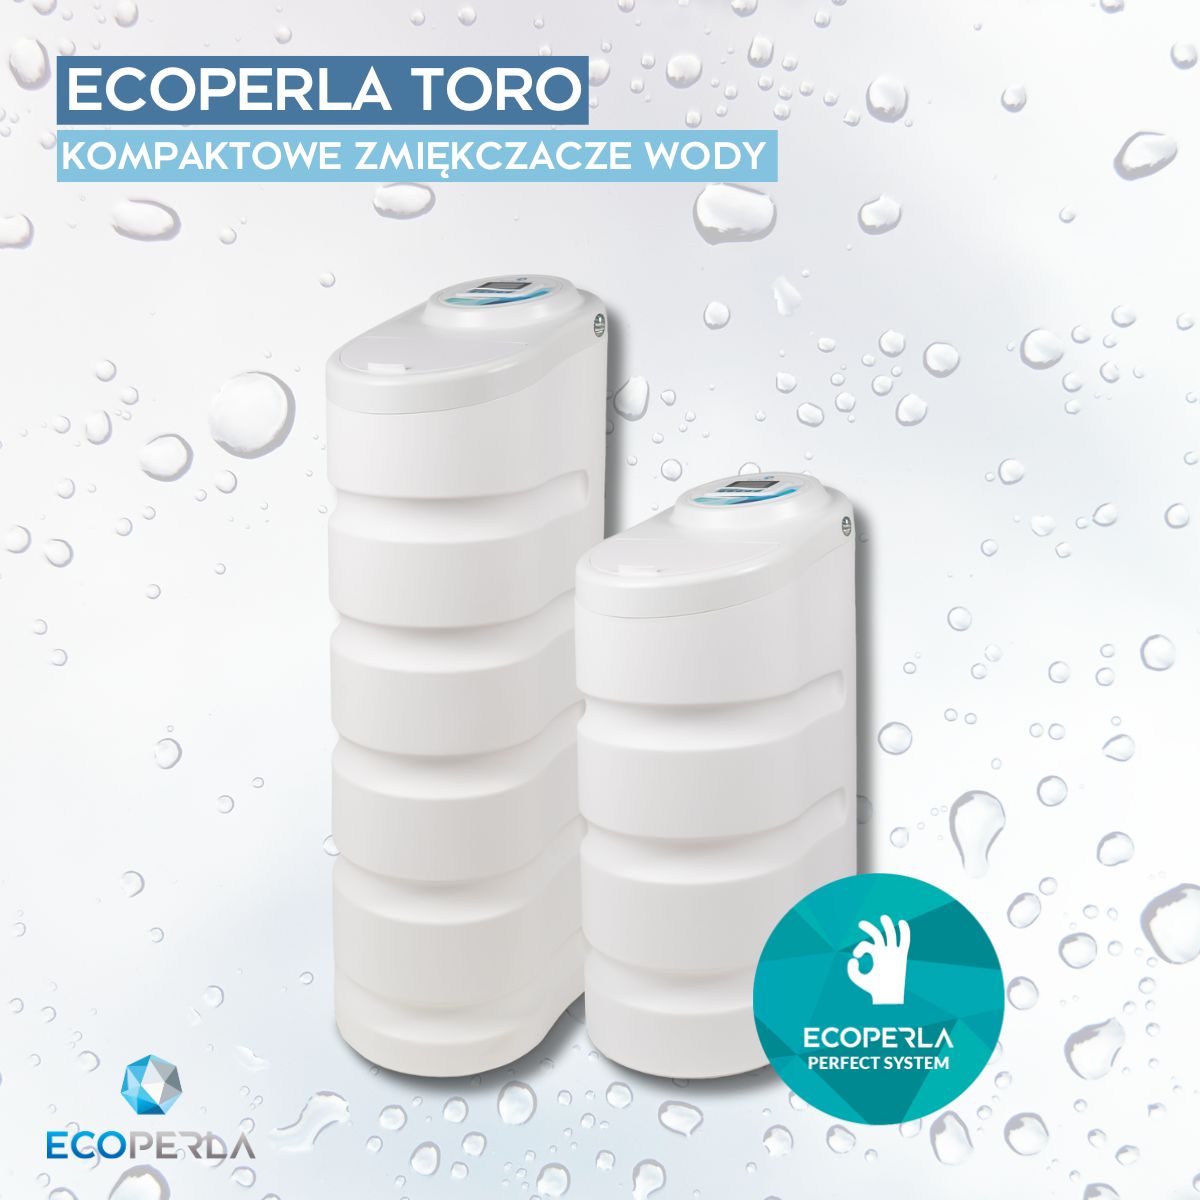 Ecoperla Toro - zmiękczacz wody